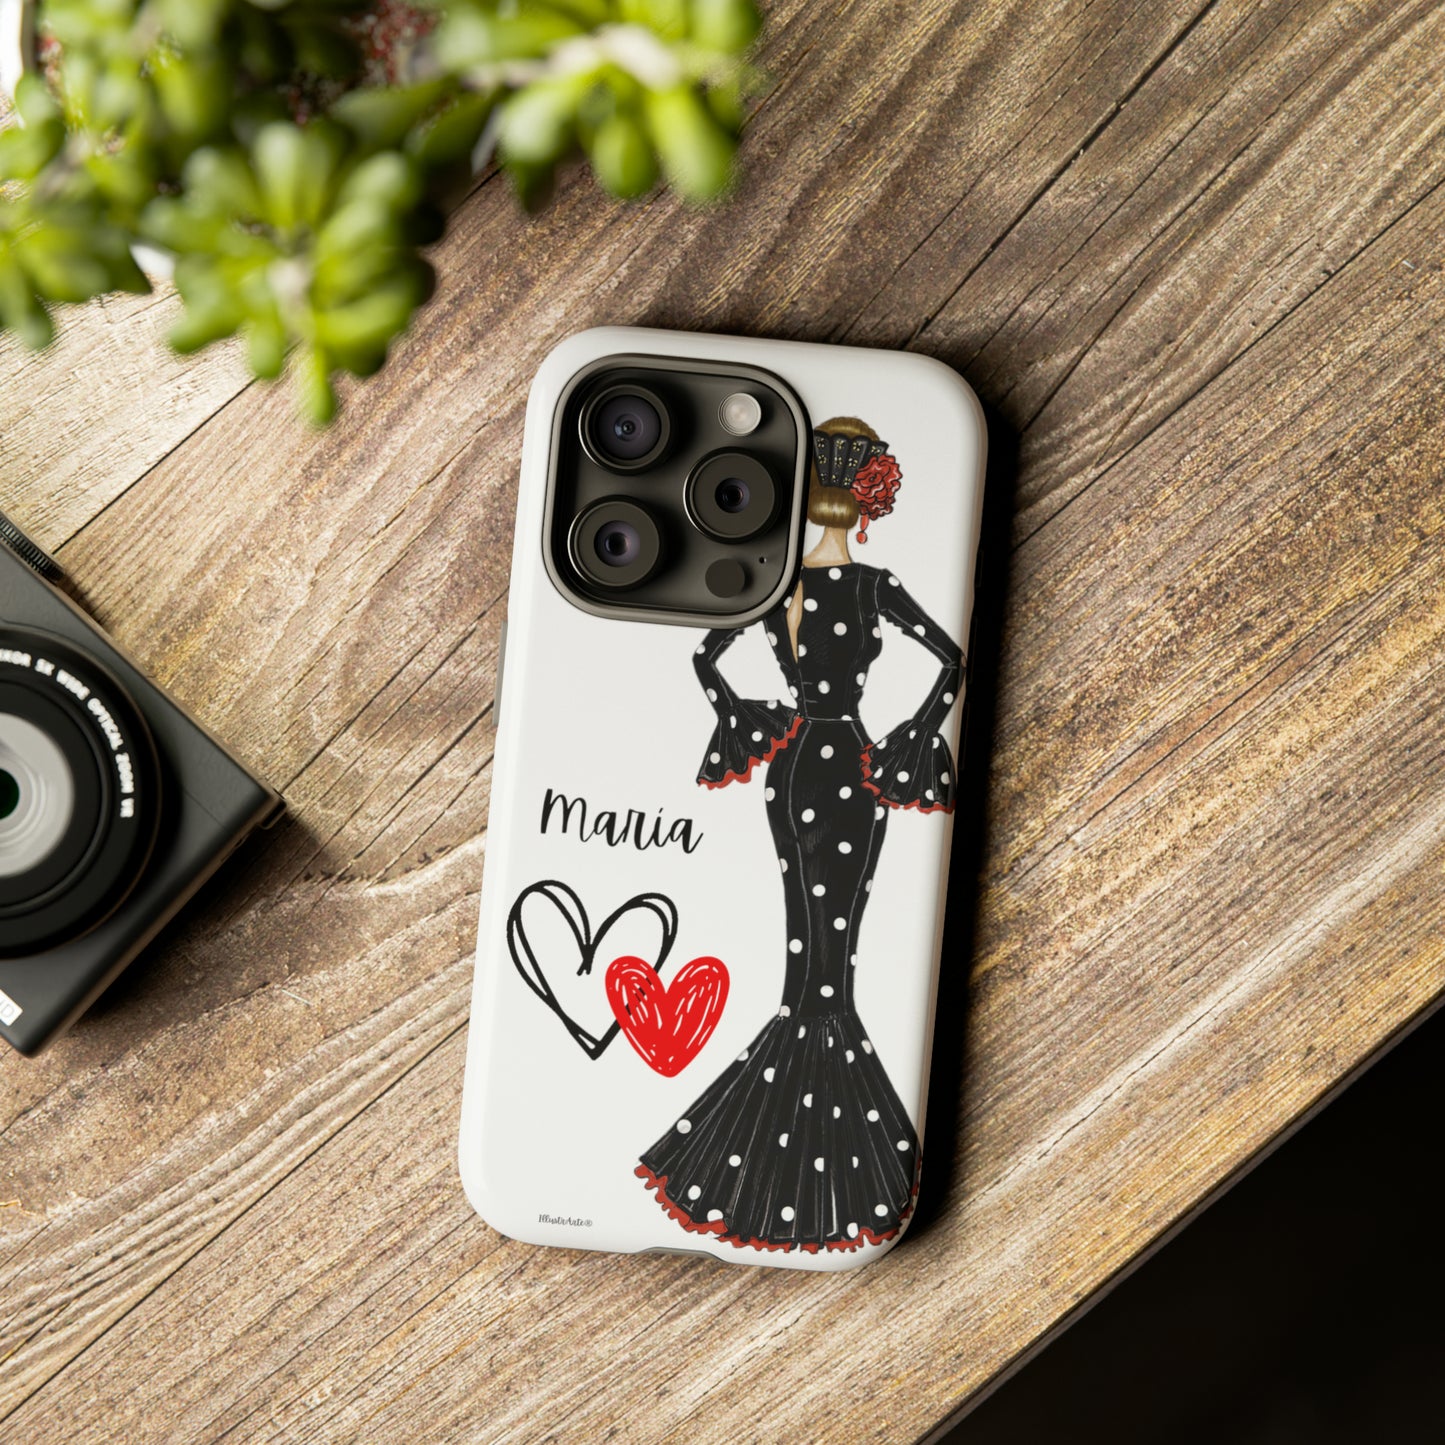 Funda de teléfono flamenca, rígida y resistente, blanca, personalizable para teléfono - Nuestra bailaora de flamenco María con un elegante vestido de lunares negros